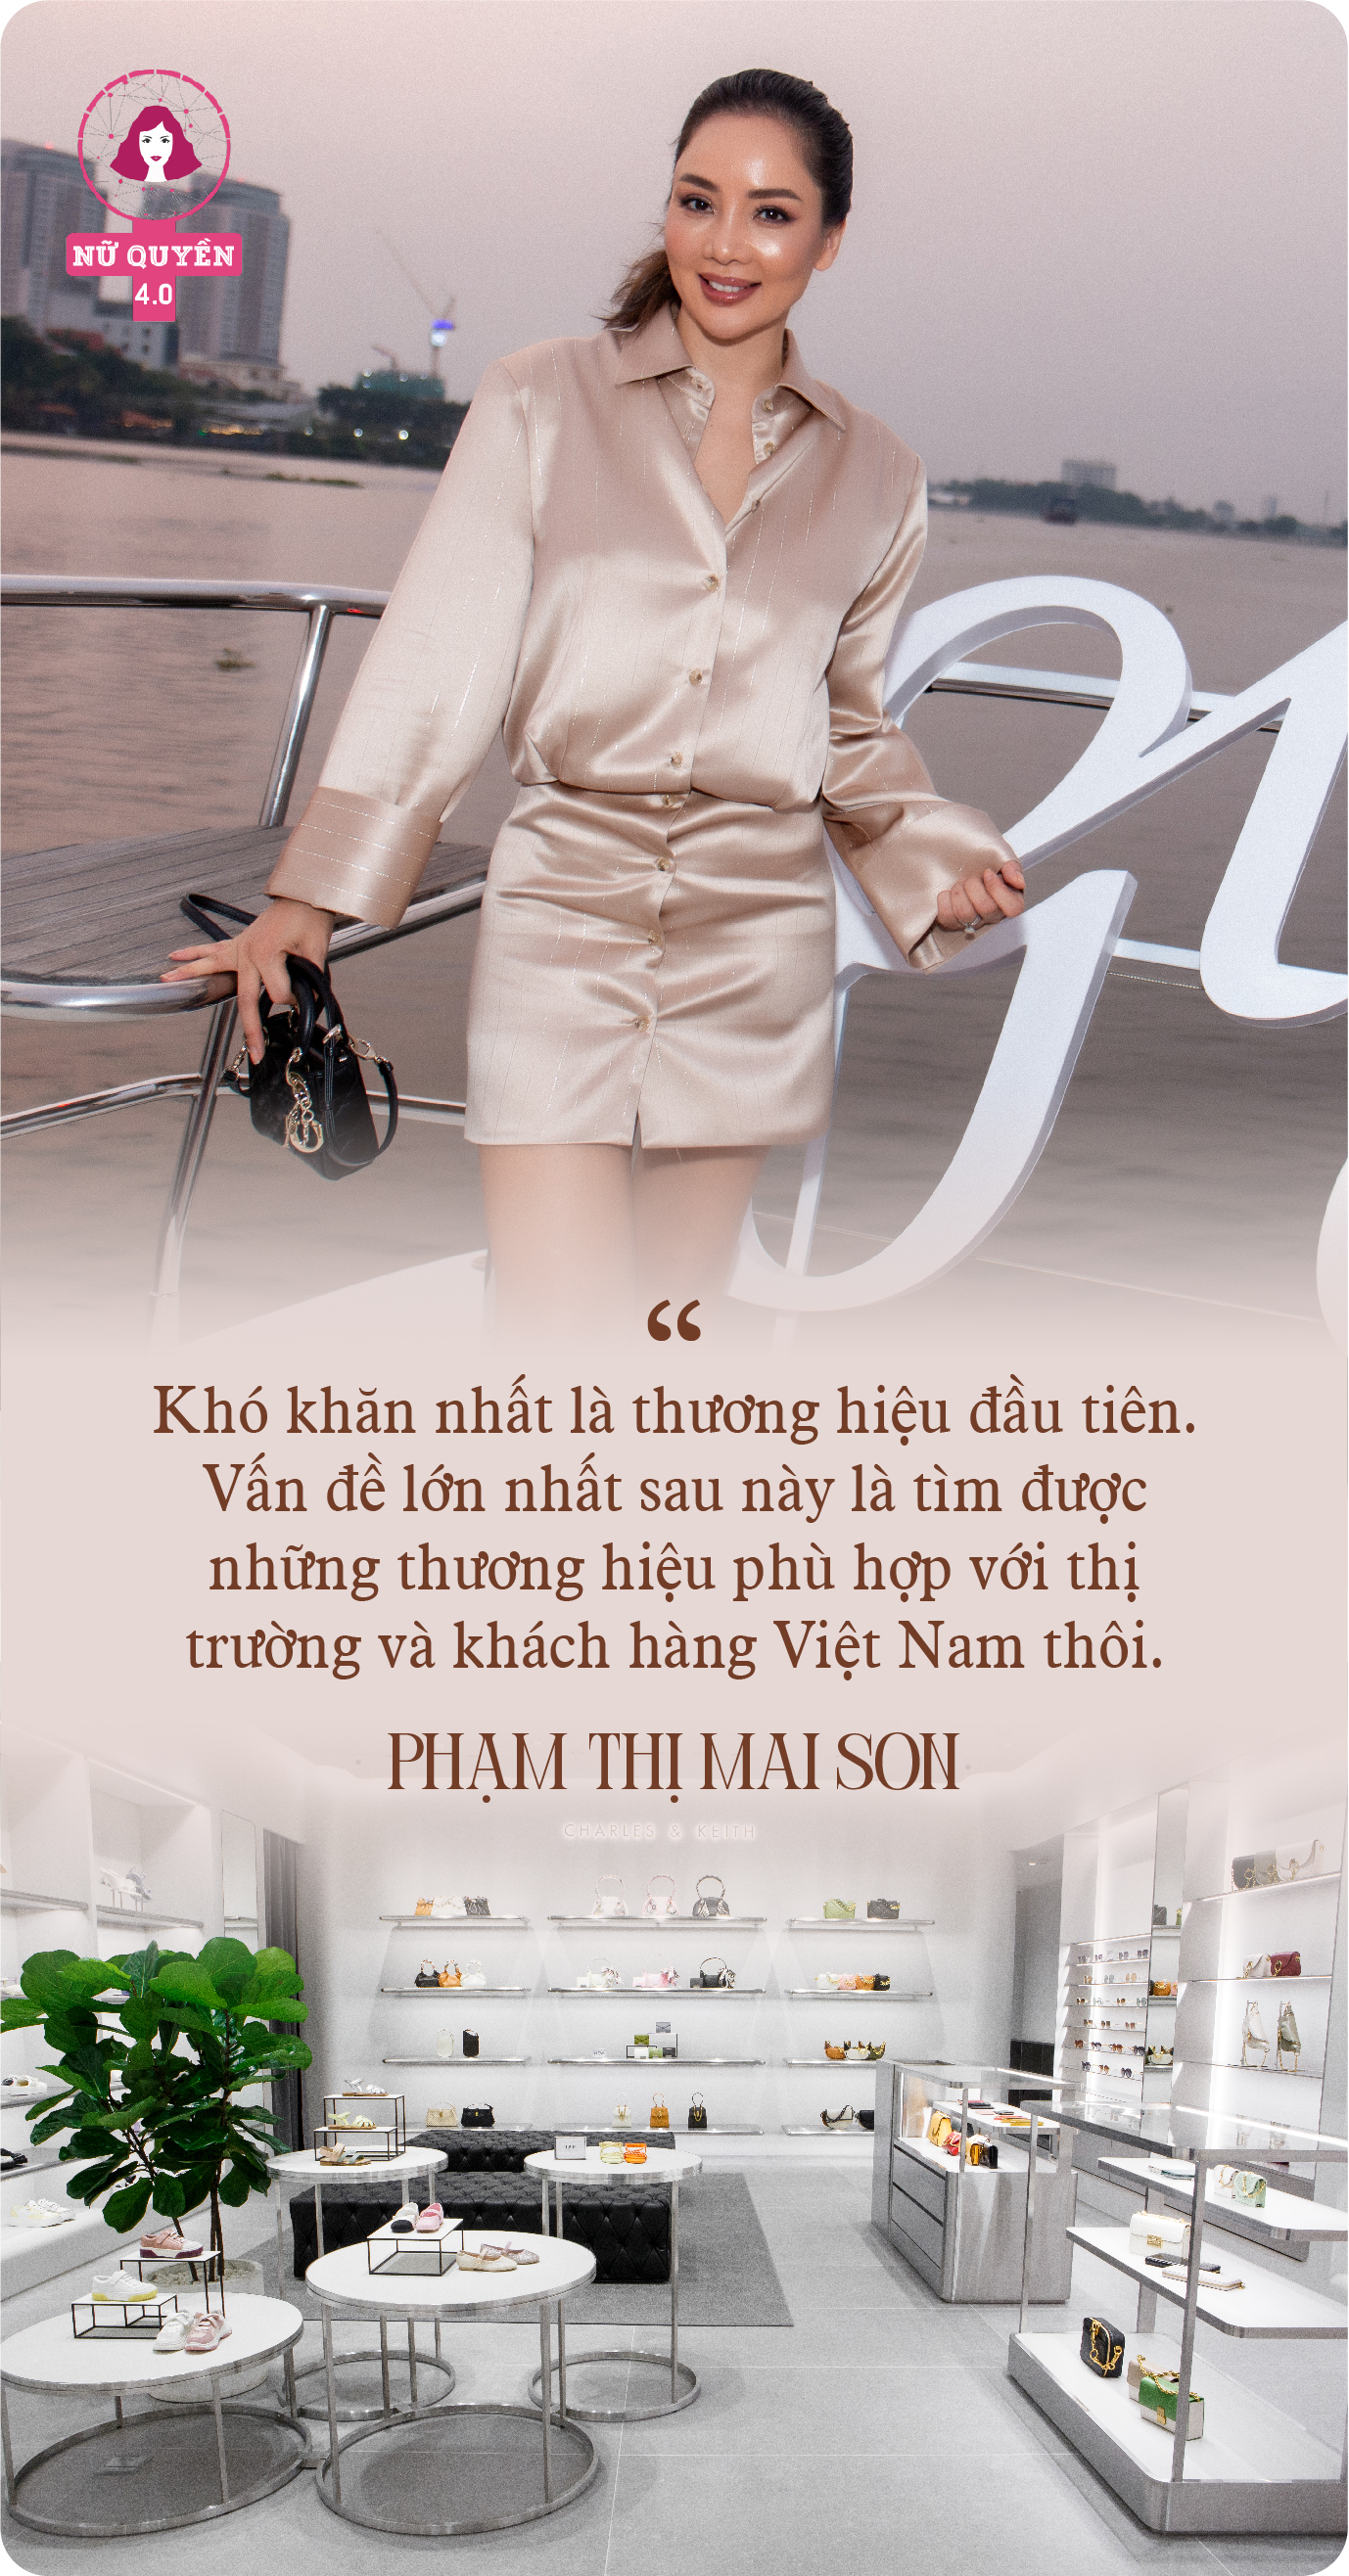 Đưa loạt thương hiệu quốc tế về Việt Nam, đặt mục tiêu nhân 3 quy mô, CEO Mai Son: “20 năm trước, chúng tôi cảm nhận xu hướng thị trường, còn giờ mọi thứ đều dựa trên dữ liệu” - Ảnh 3.